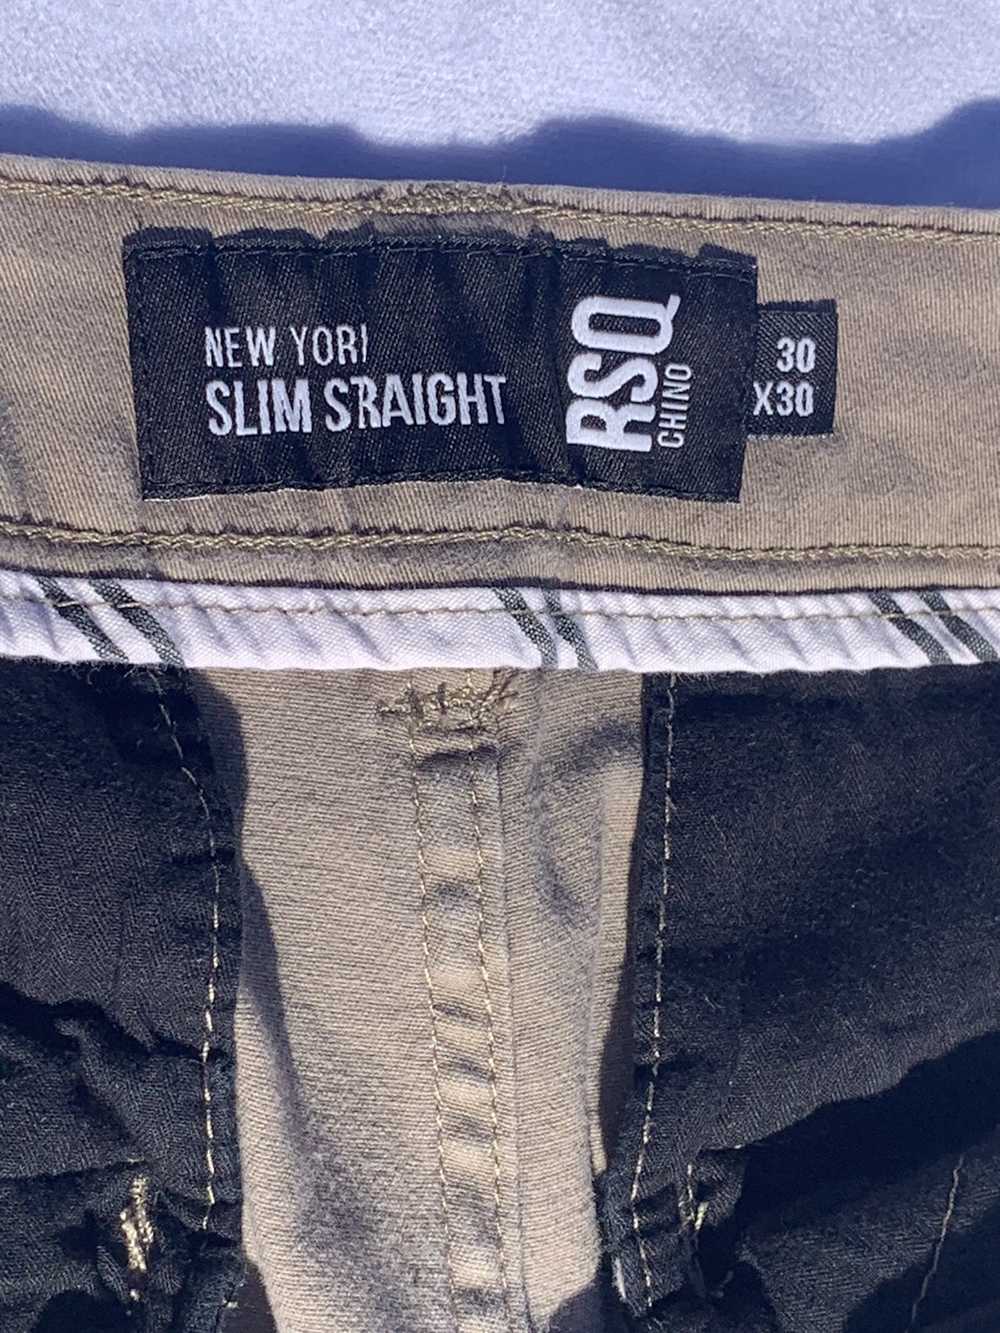 Rsq RSQ Mens Slim Straight Chino Pants - image 3